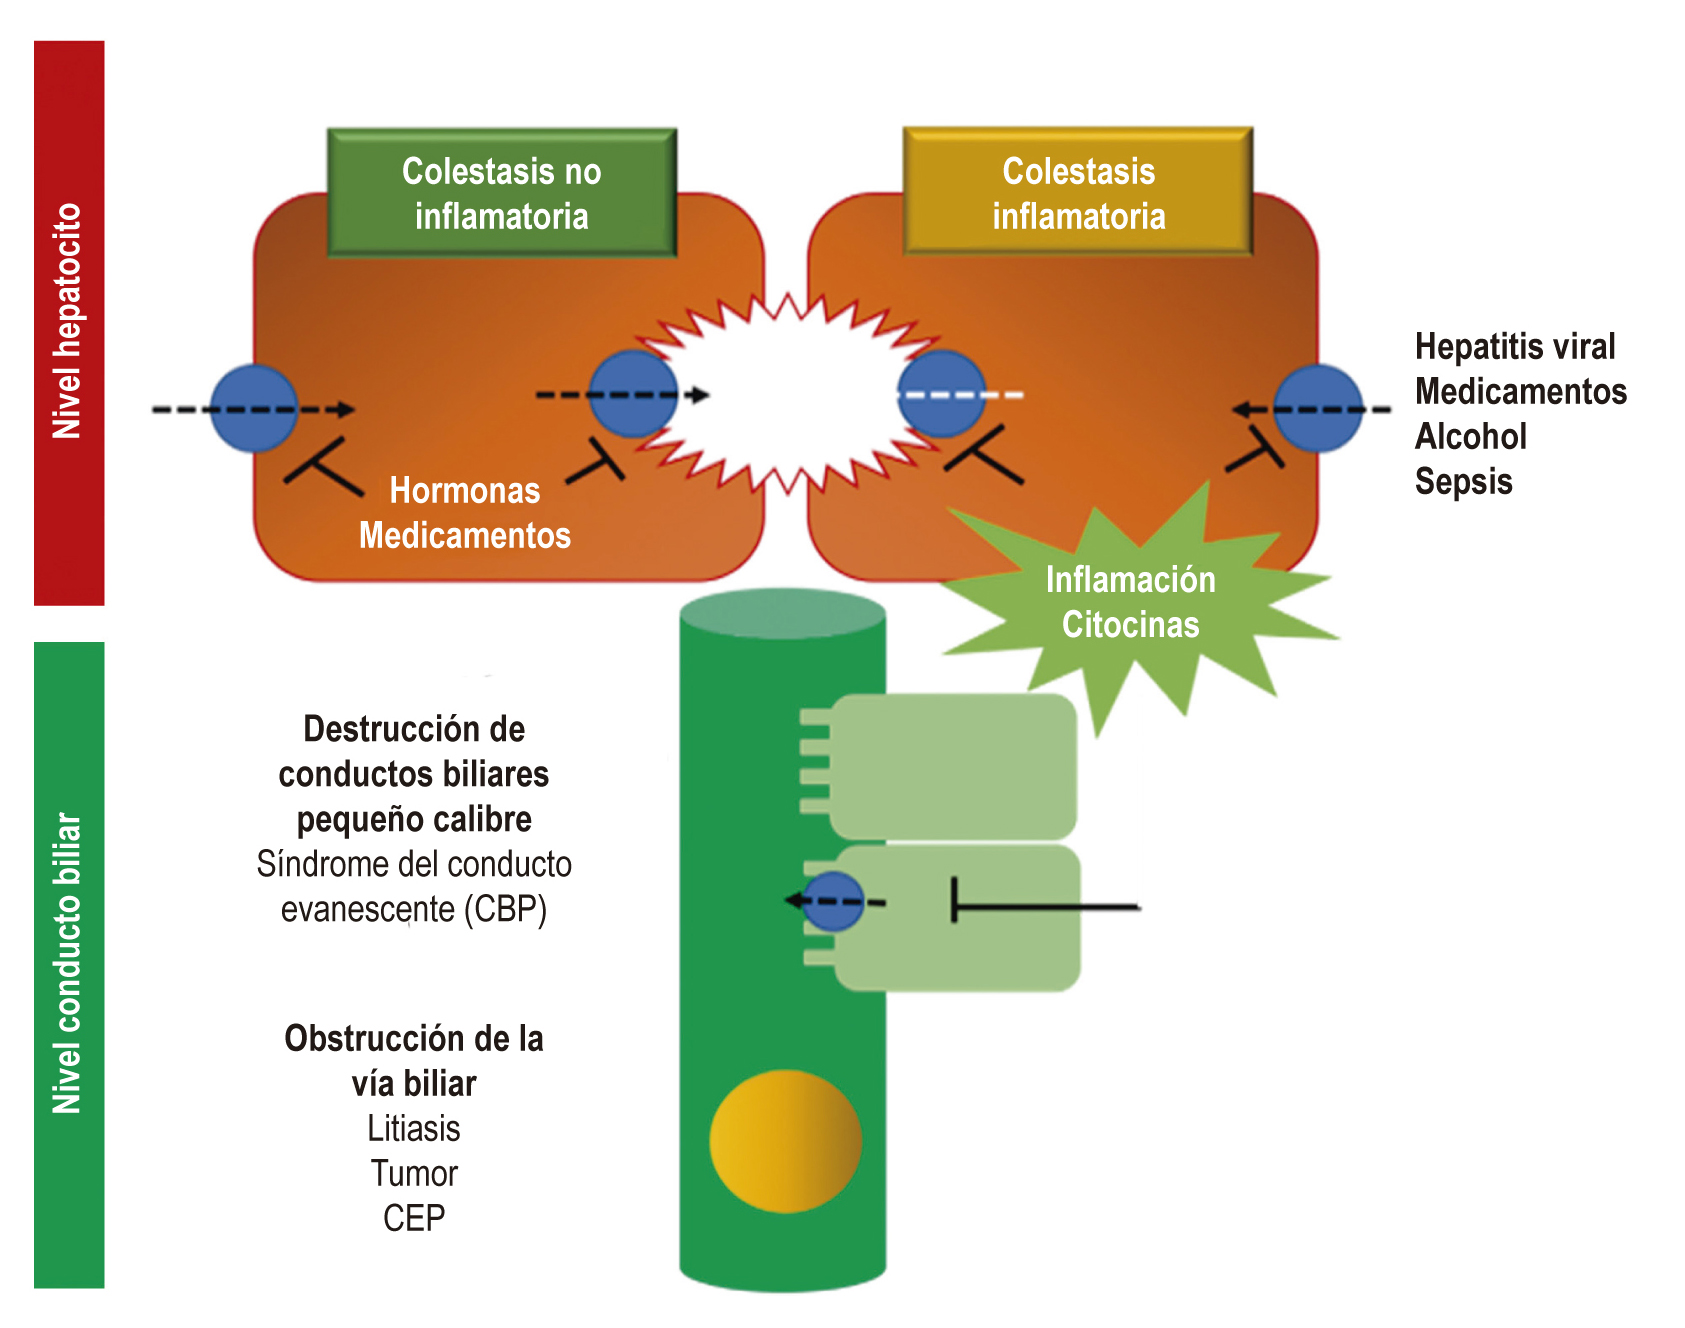 Mecanismos principales de la colestasis